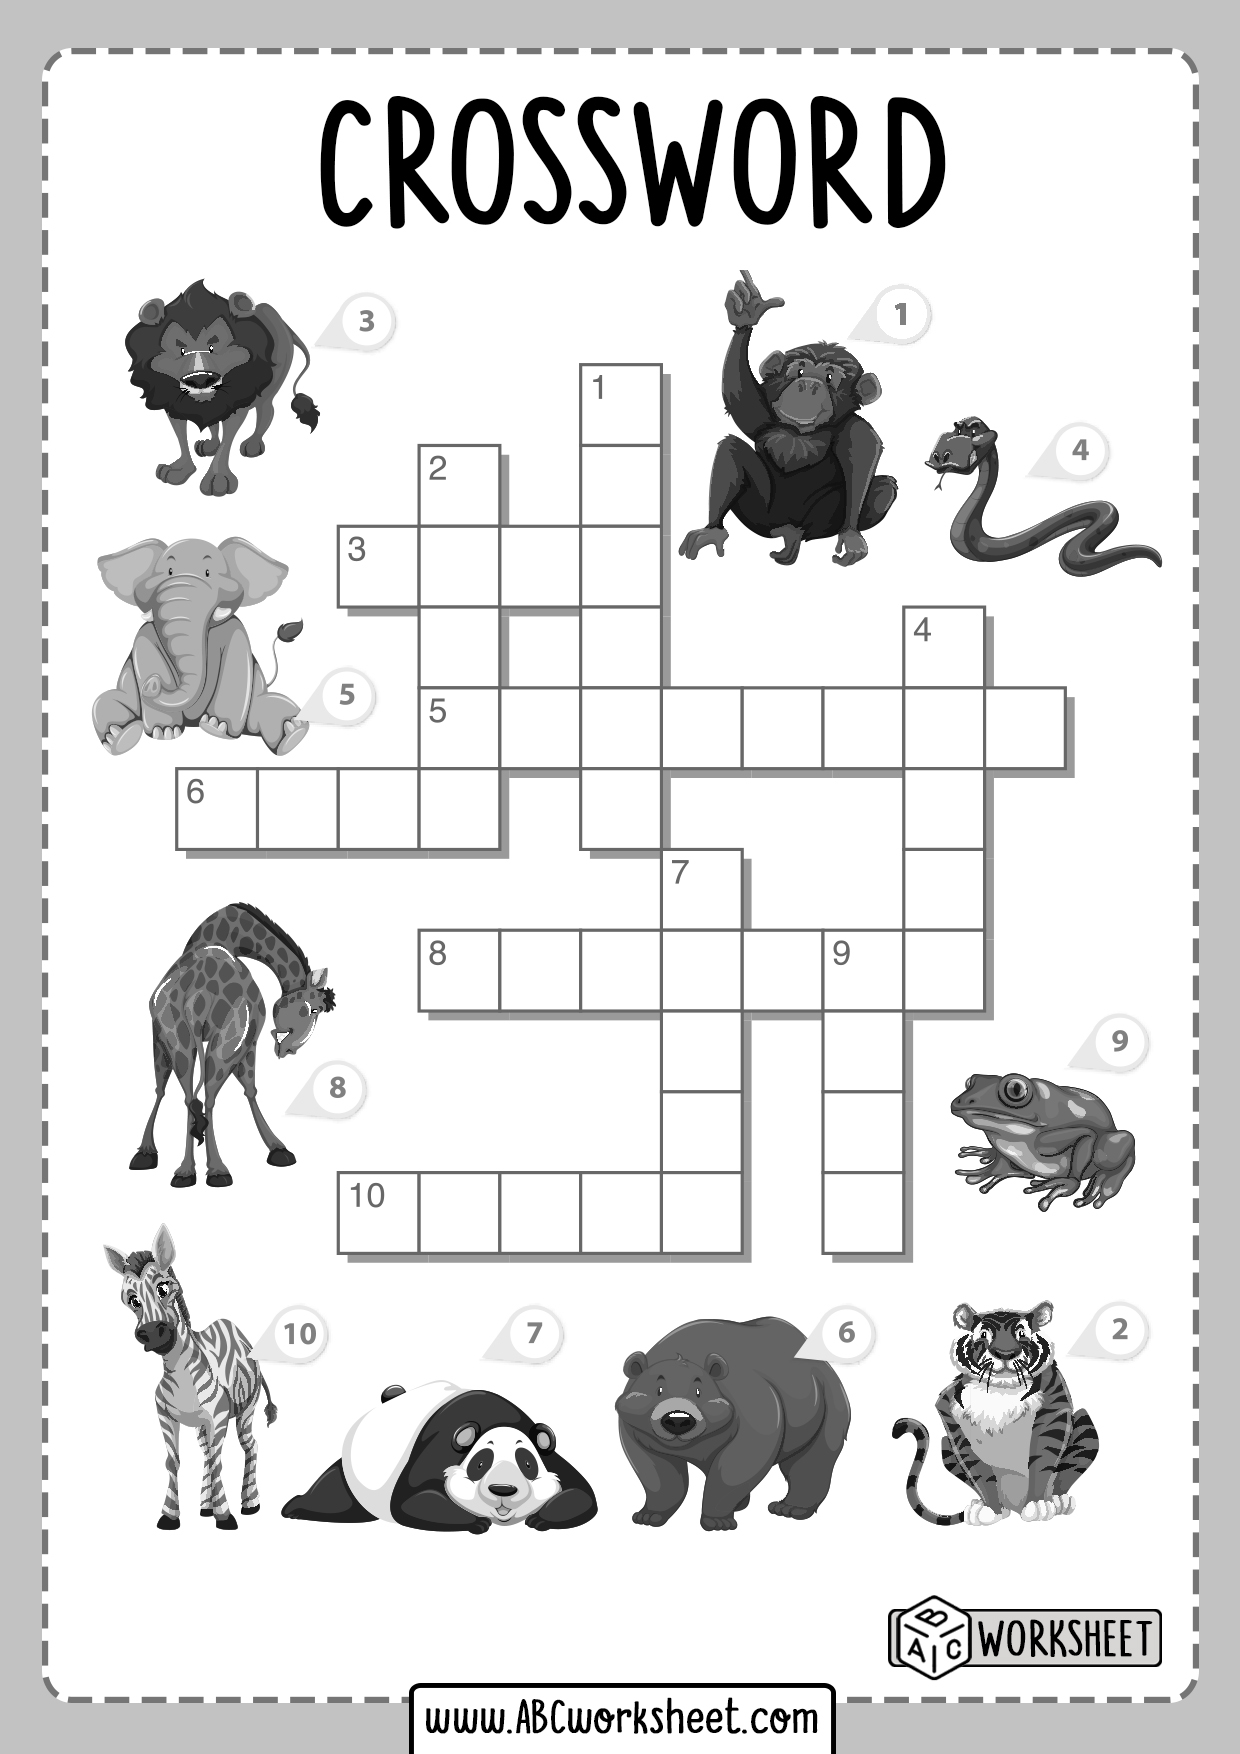 crosswords-for-kids-sevennored